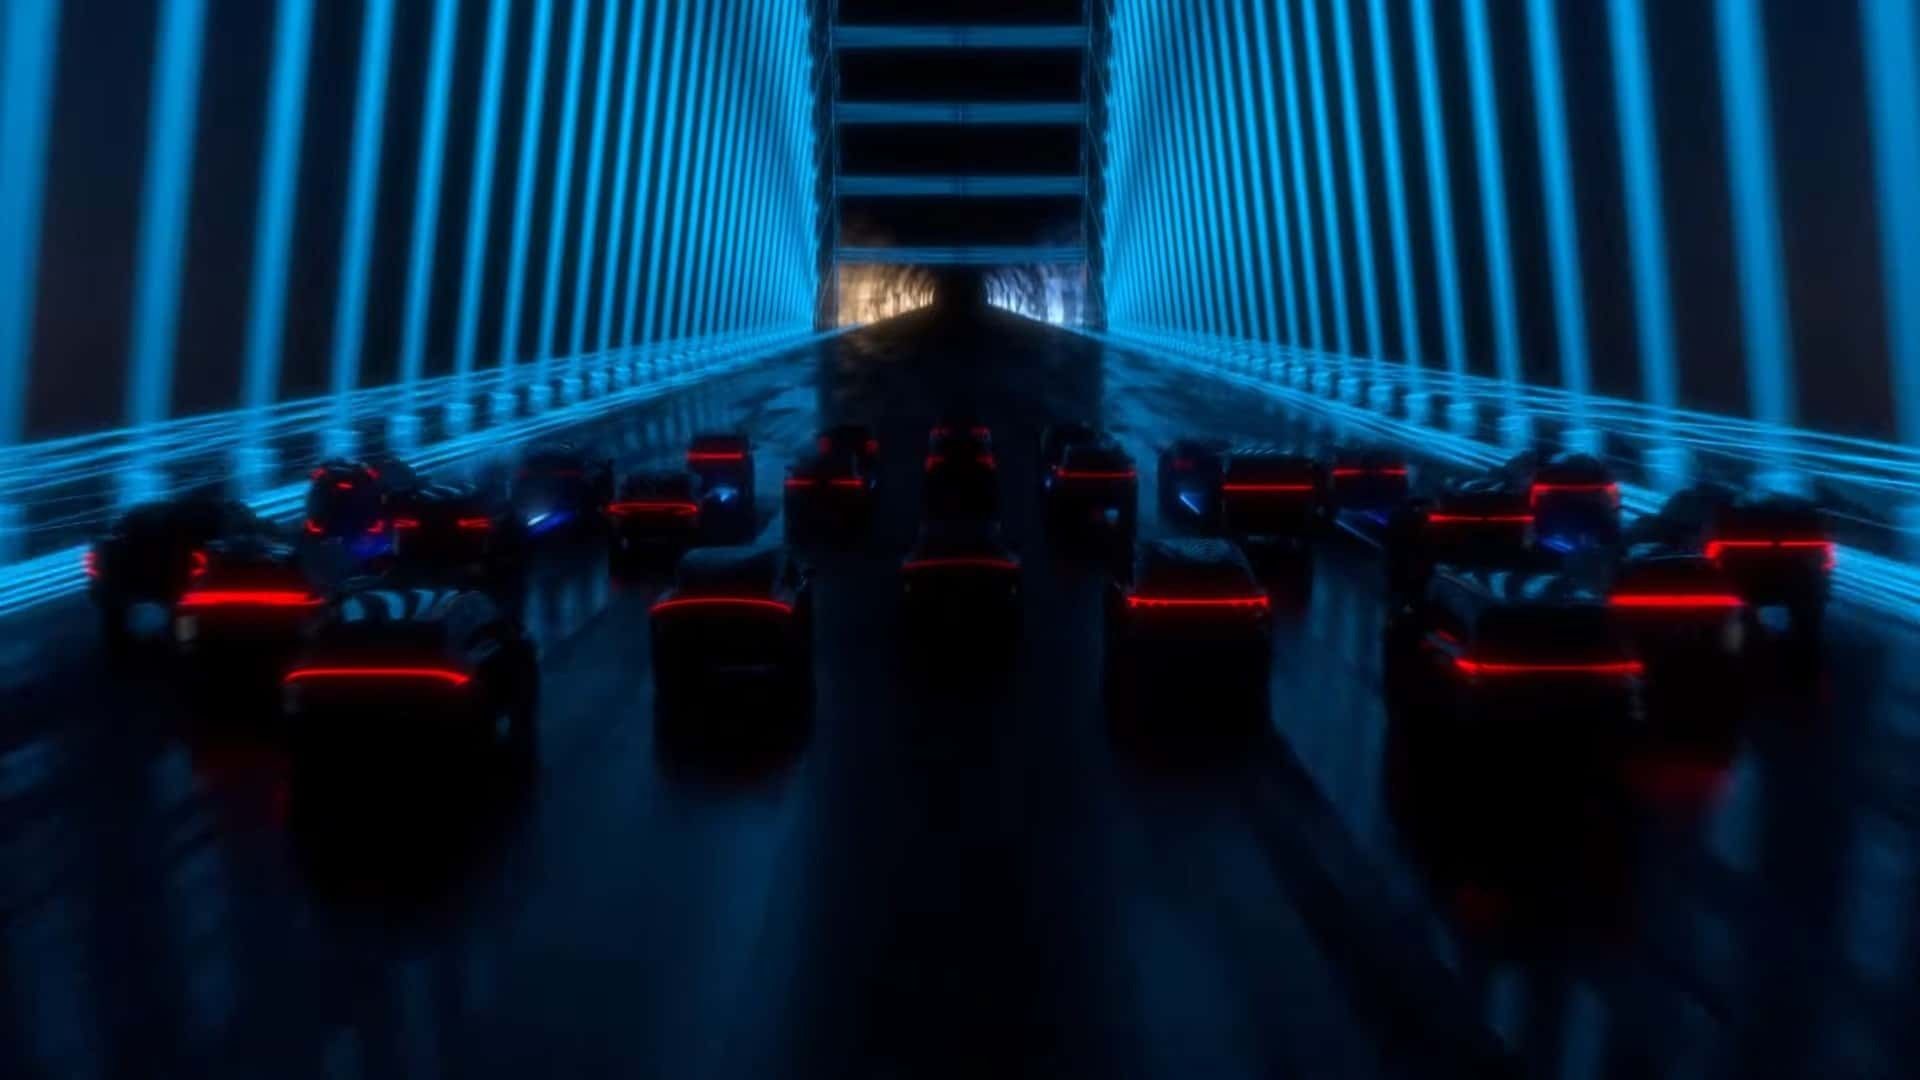 تصویر سایه های ۳۰ خودرو جدید نیسان که در خیابان می روند با نور چراغ قرمز